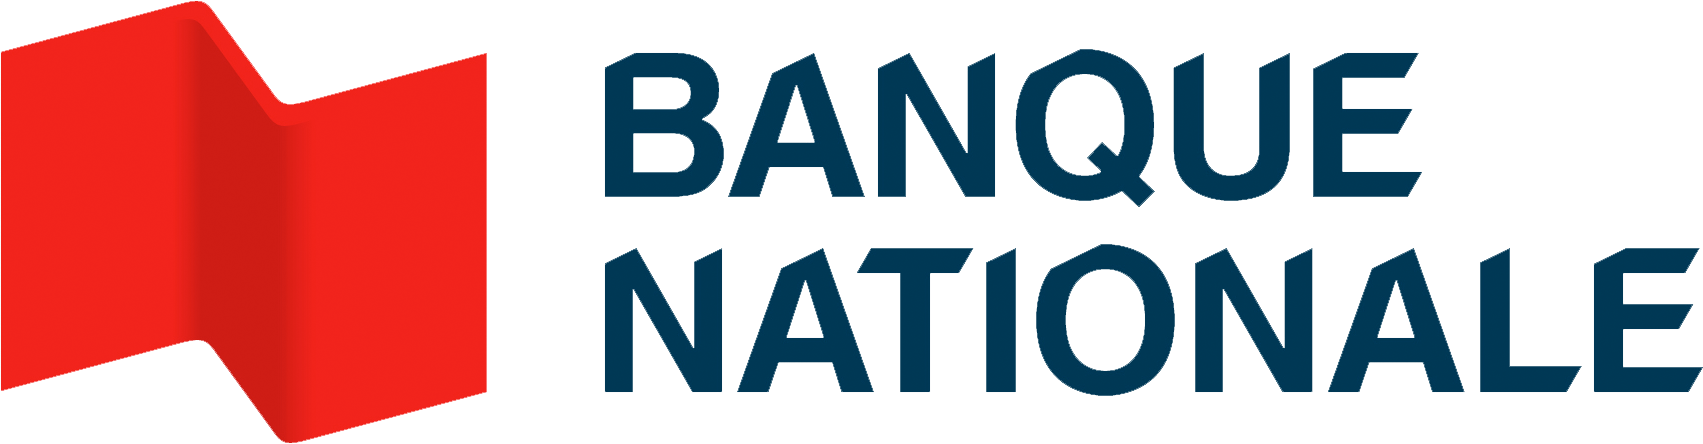 Bnc : logo du partenaire hypothécaire